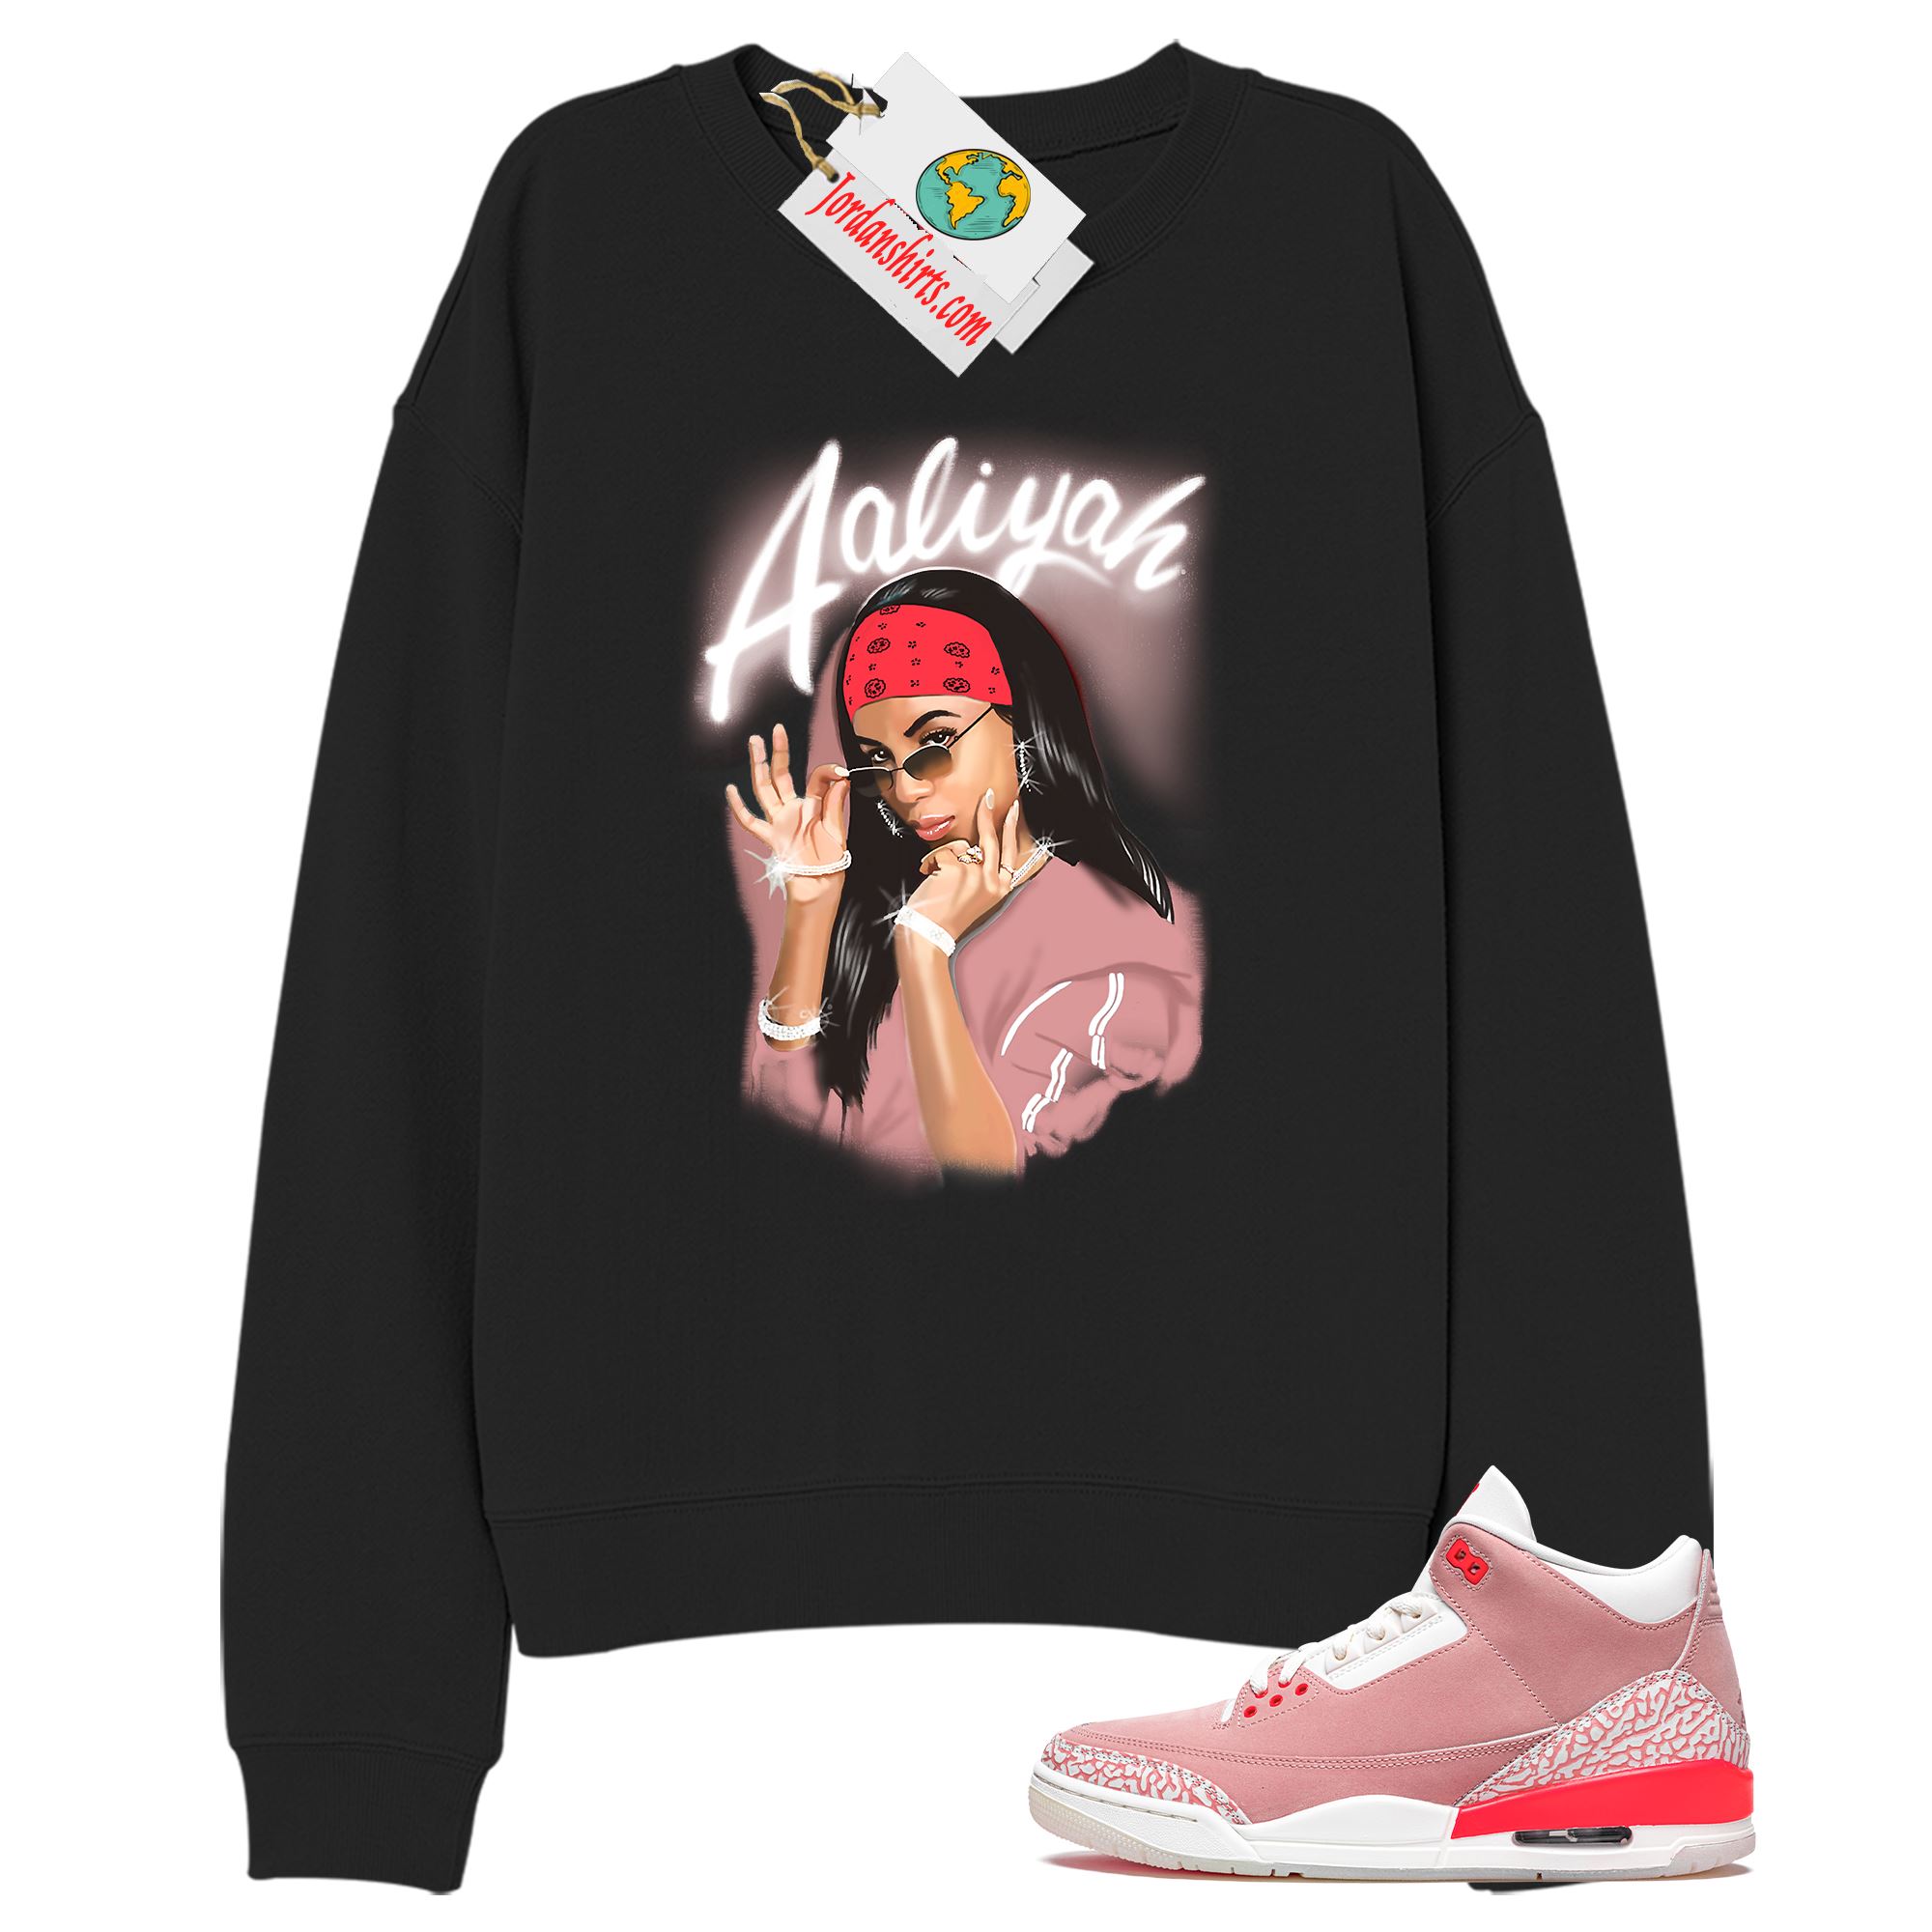 Jordan 3 Sweatshirt, Aaliyah Airbrush Black Sweatshirt Air Jordan 3 Rust Pink 3s Size Up To 5xl